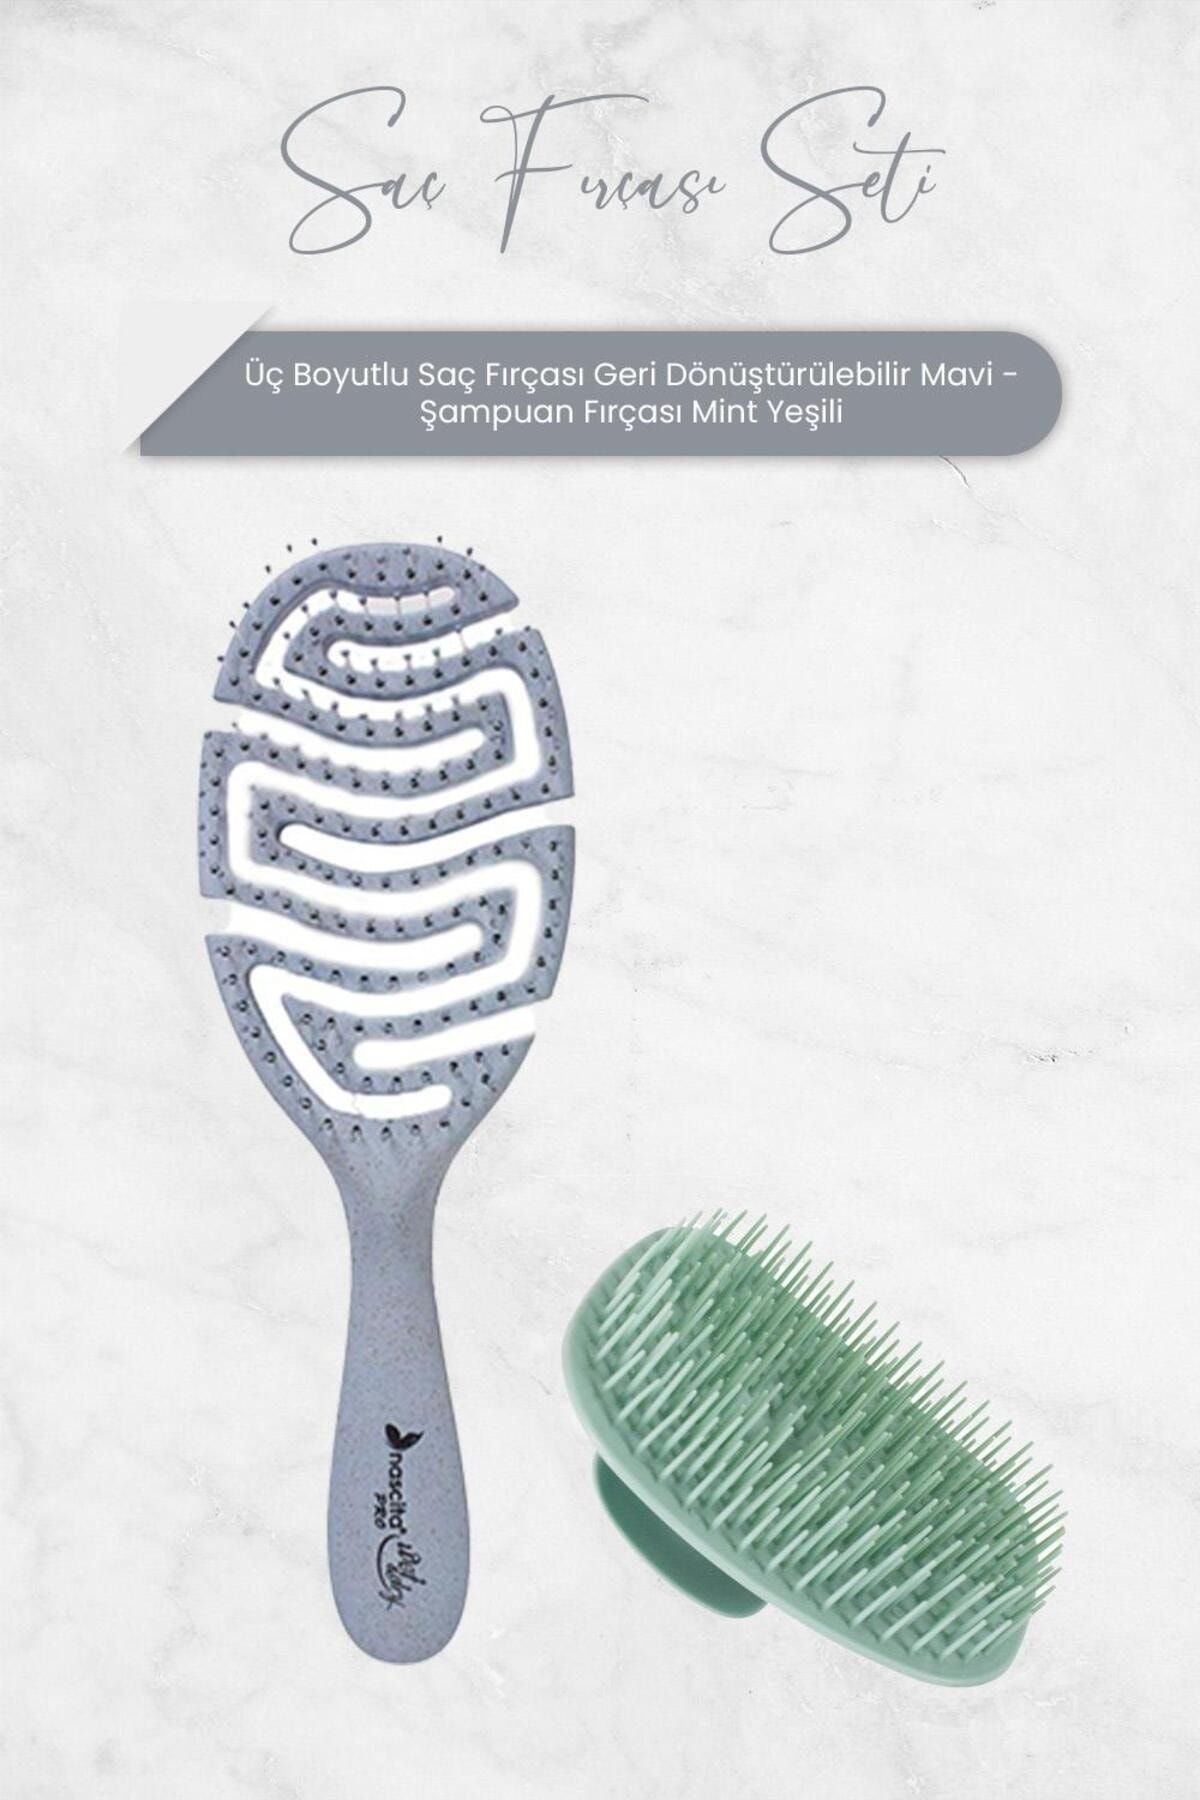 Nascita Üç Boyutlu Saç Fırçası Geri Dönüştürülebilir Mavi ve Şampuan Fırçası Mint Yeşili